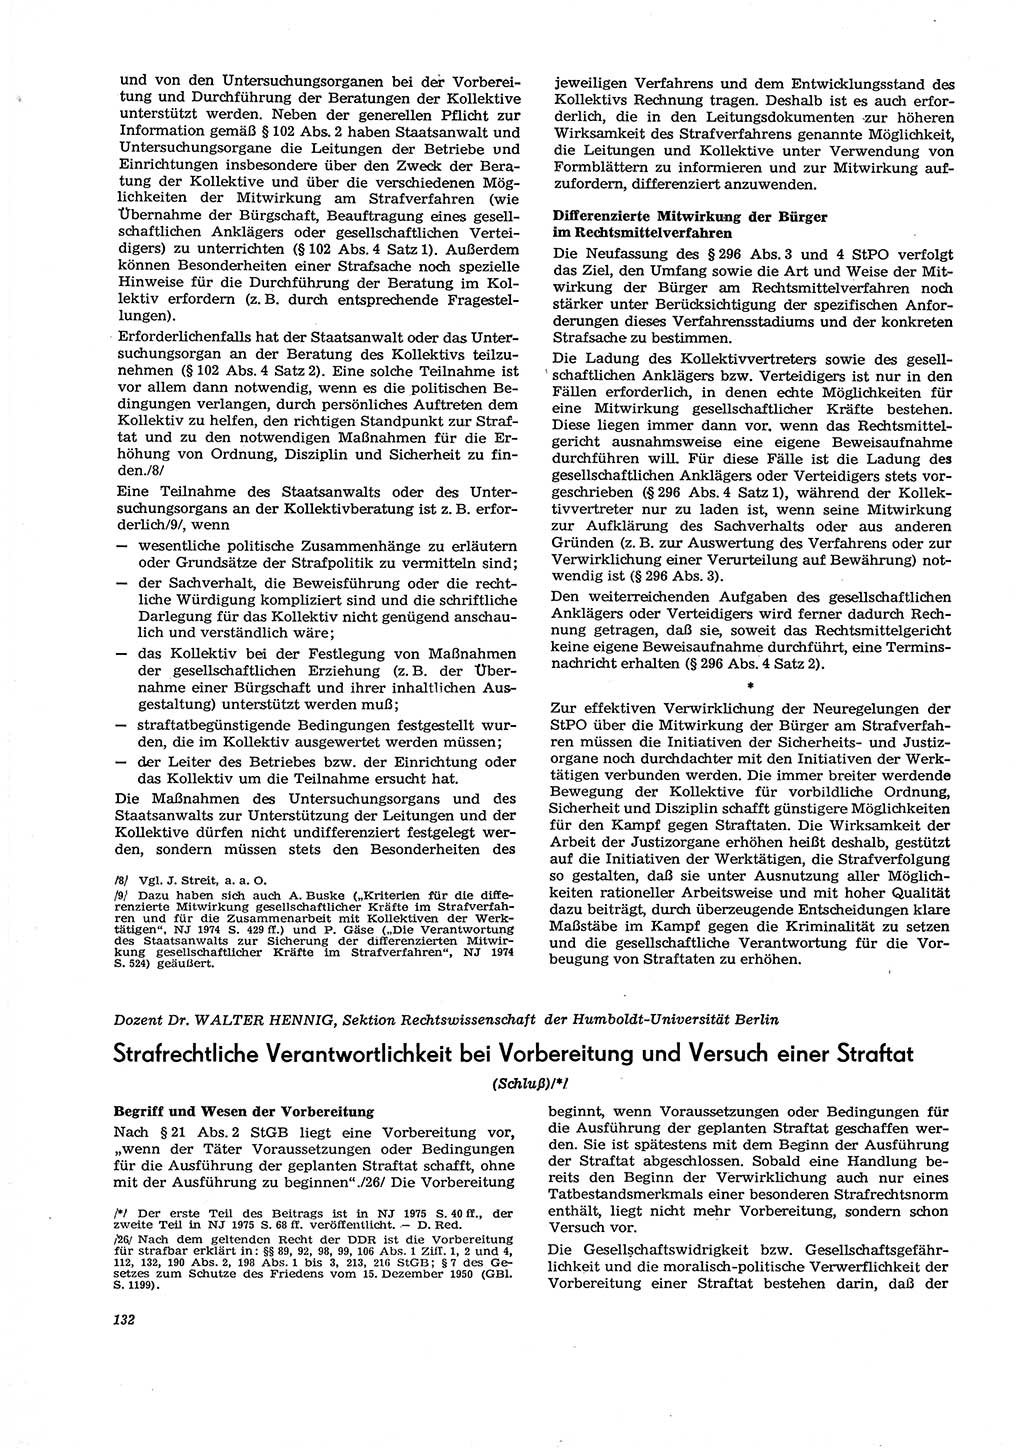 Neue Justiz (NJ), Zeitschrift für Recht und Rechtswissenschaft [Deutsche Demokratische Republik (DDR)], 29. Jahrgang 1975, Seite 132 (NJ DDR 1975, S. 132)